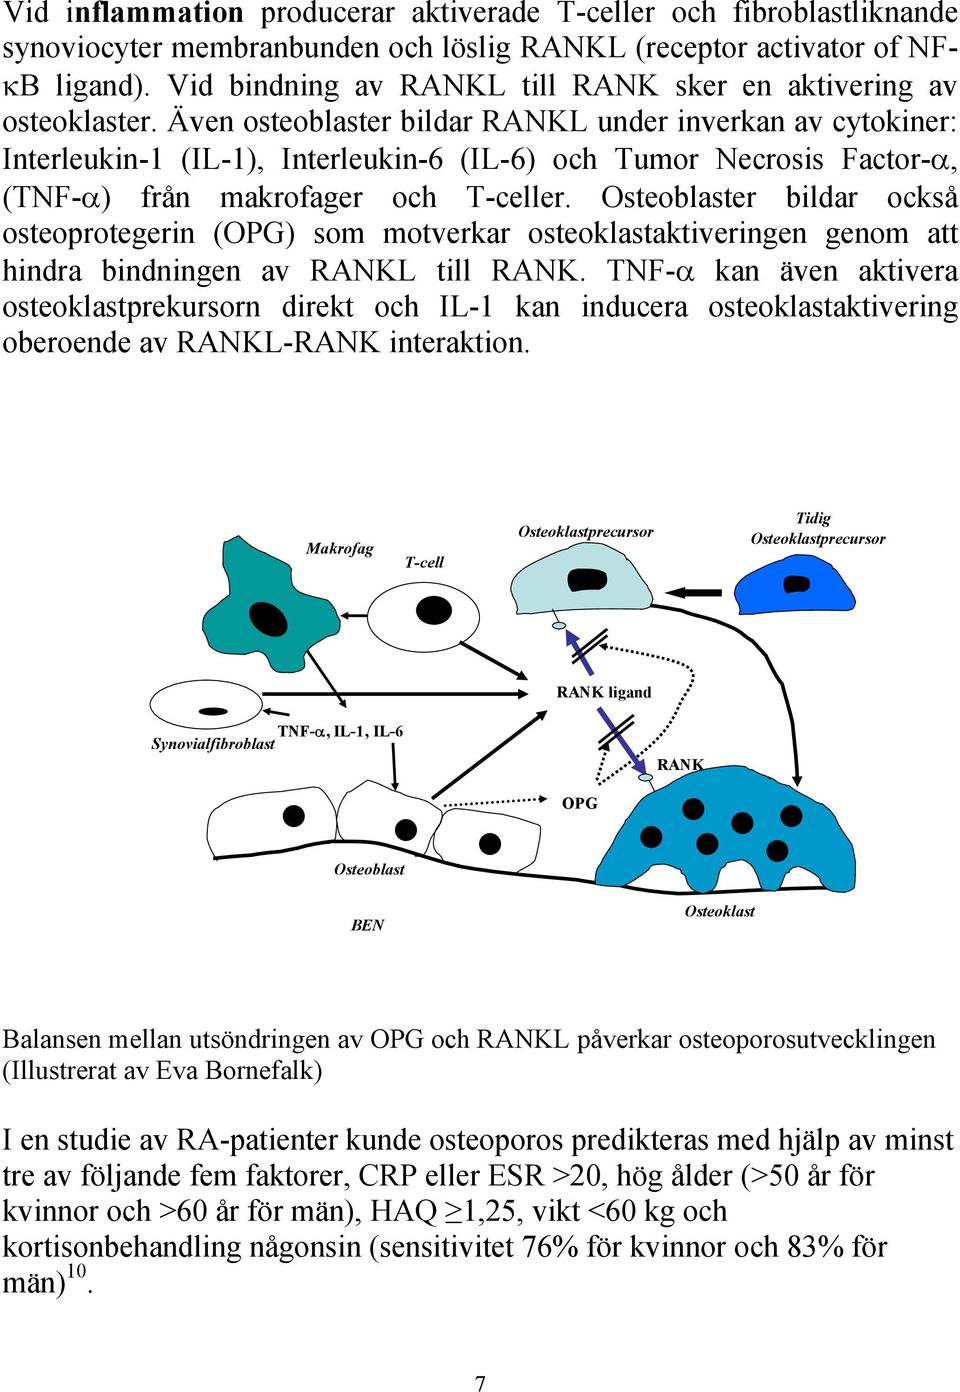 Även osteoblaster bildar RANKL under inverkan av cytokiner: Interleukin-1 (IL-1), Interleukin-6 (IL-6) och Tumor Necrosis Factor-α, (TNF-α) från makrofager och T-celler.